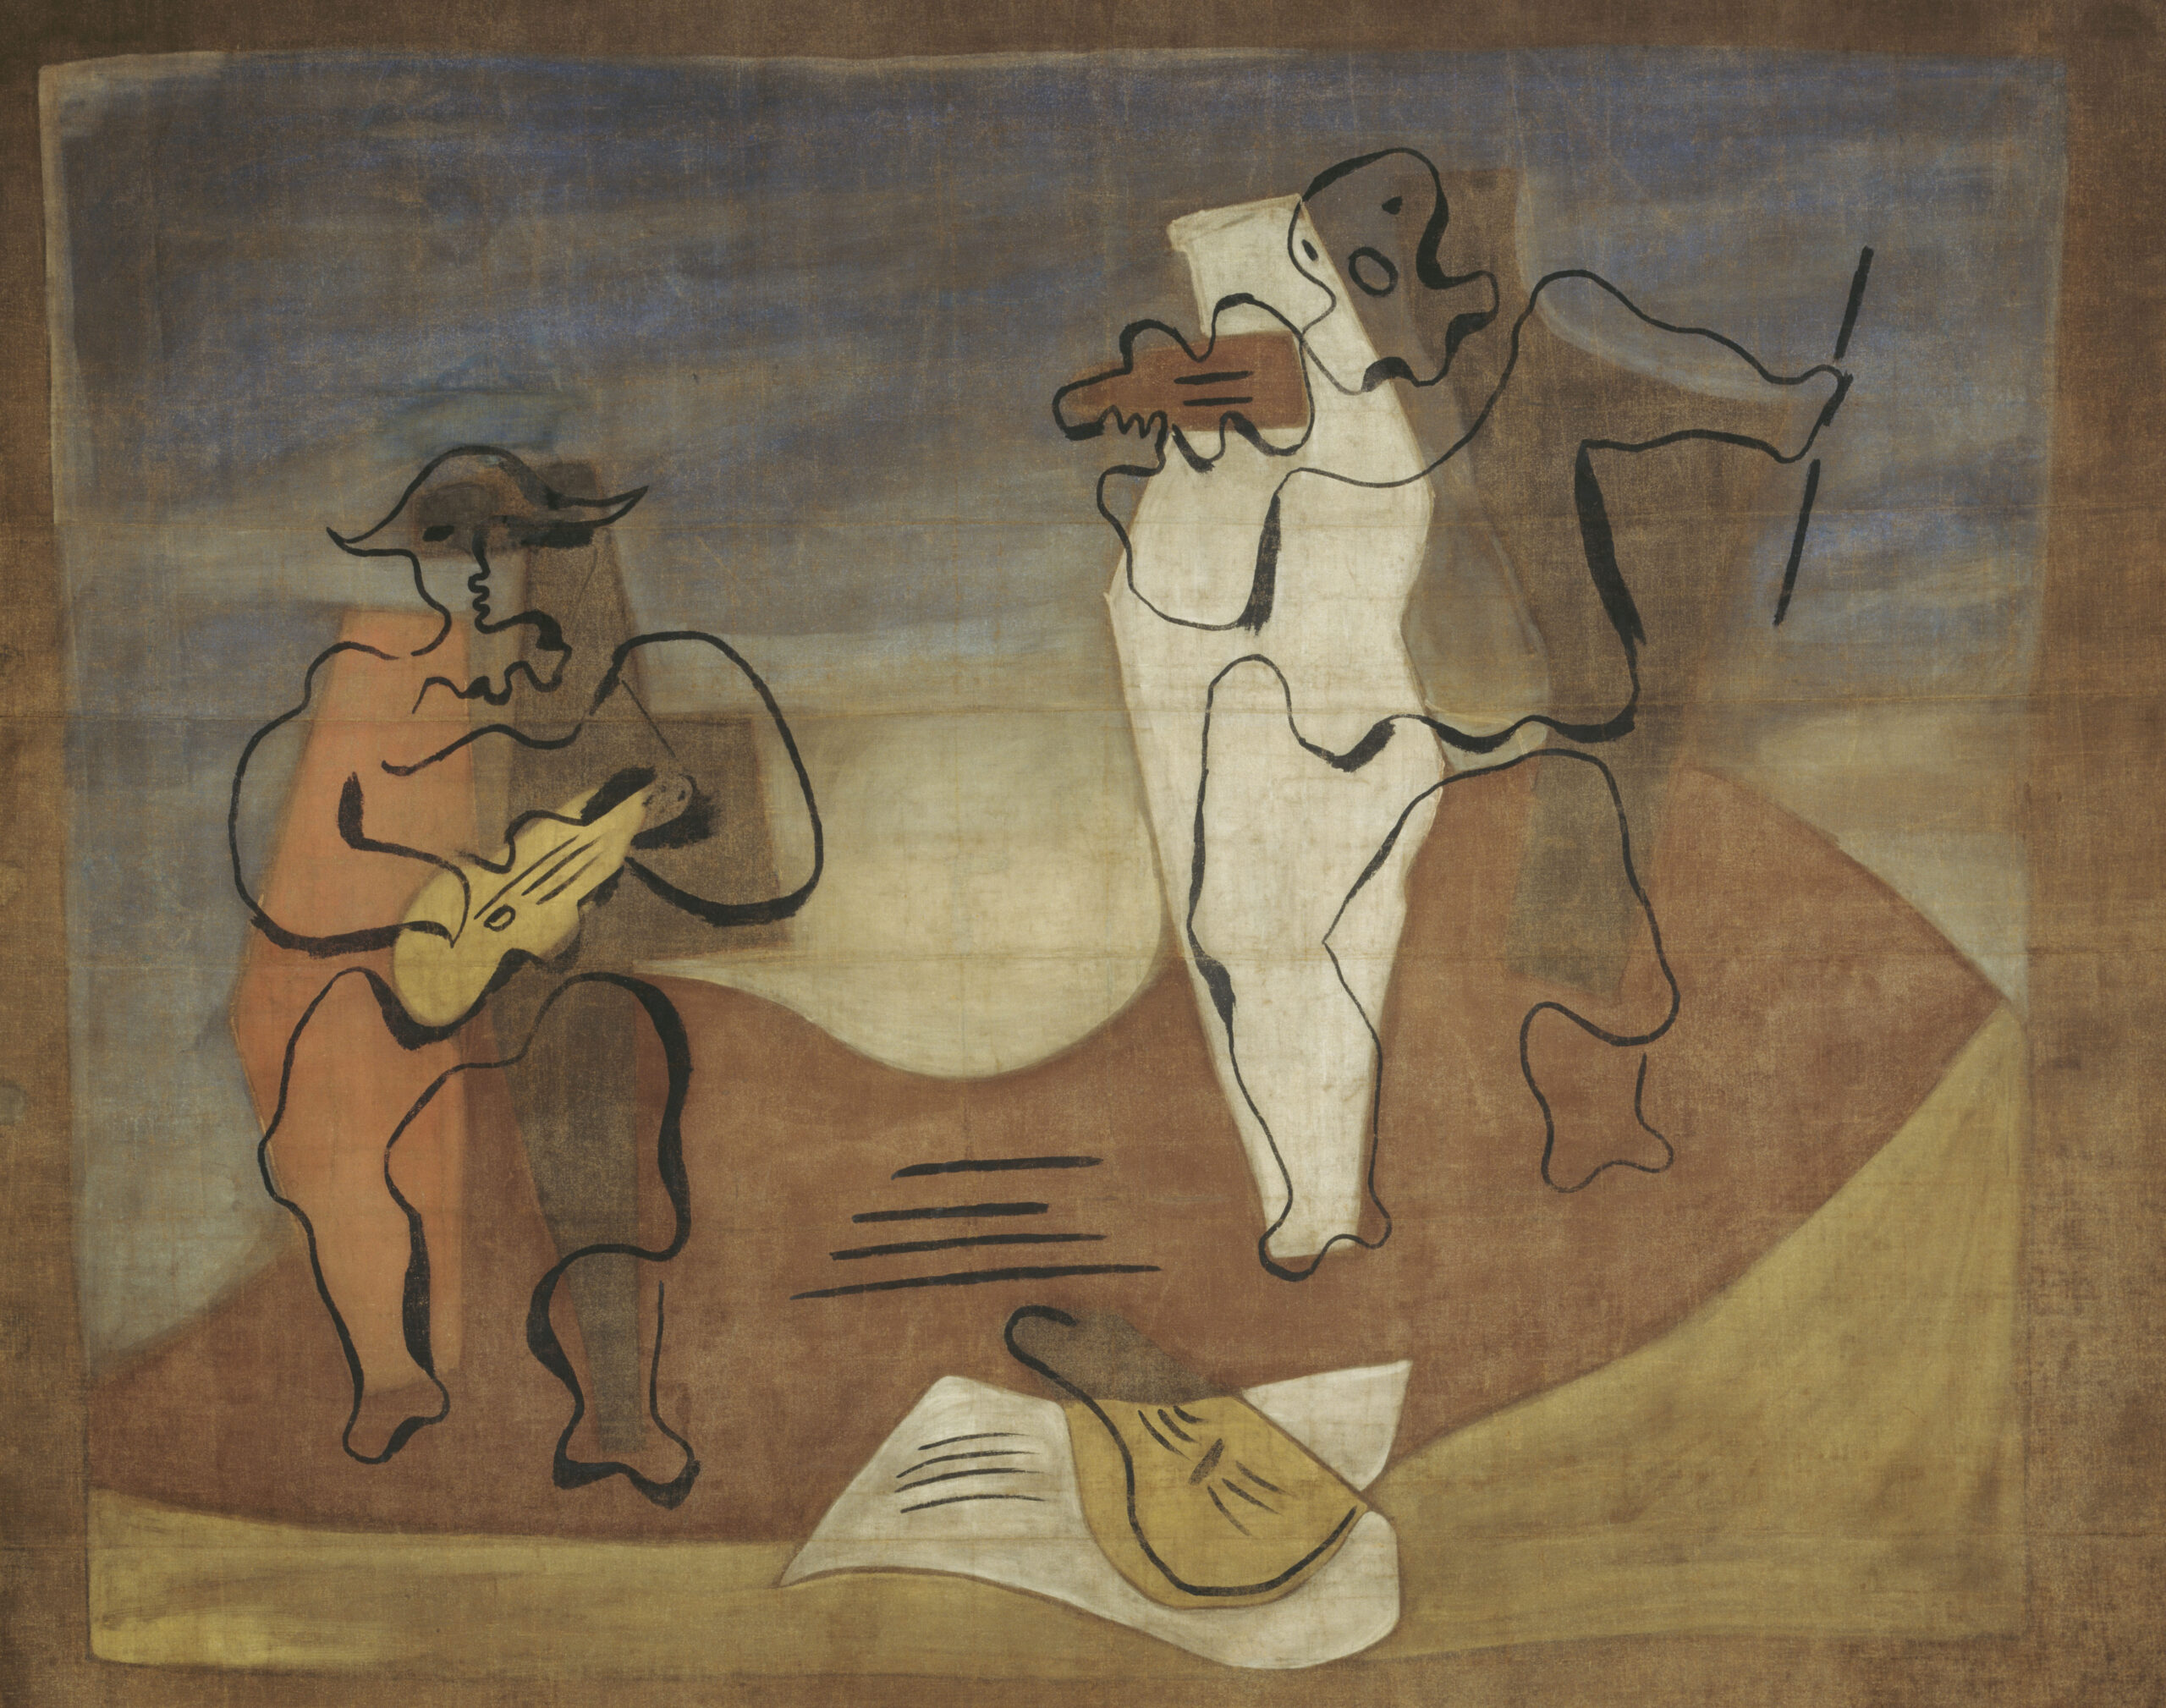 Los Periodos Artísticos de Picasso: Una Mirada a la Evolución Creativa del Maestro del Cubismo